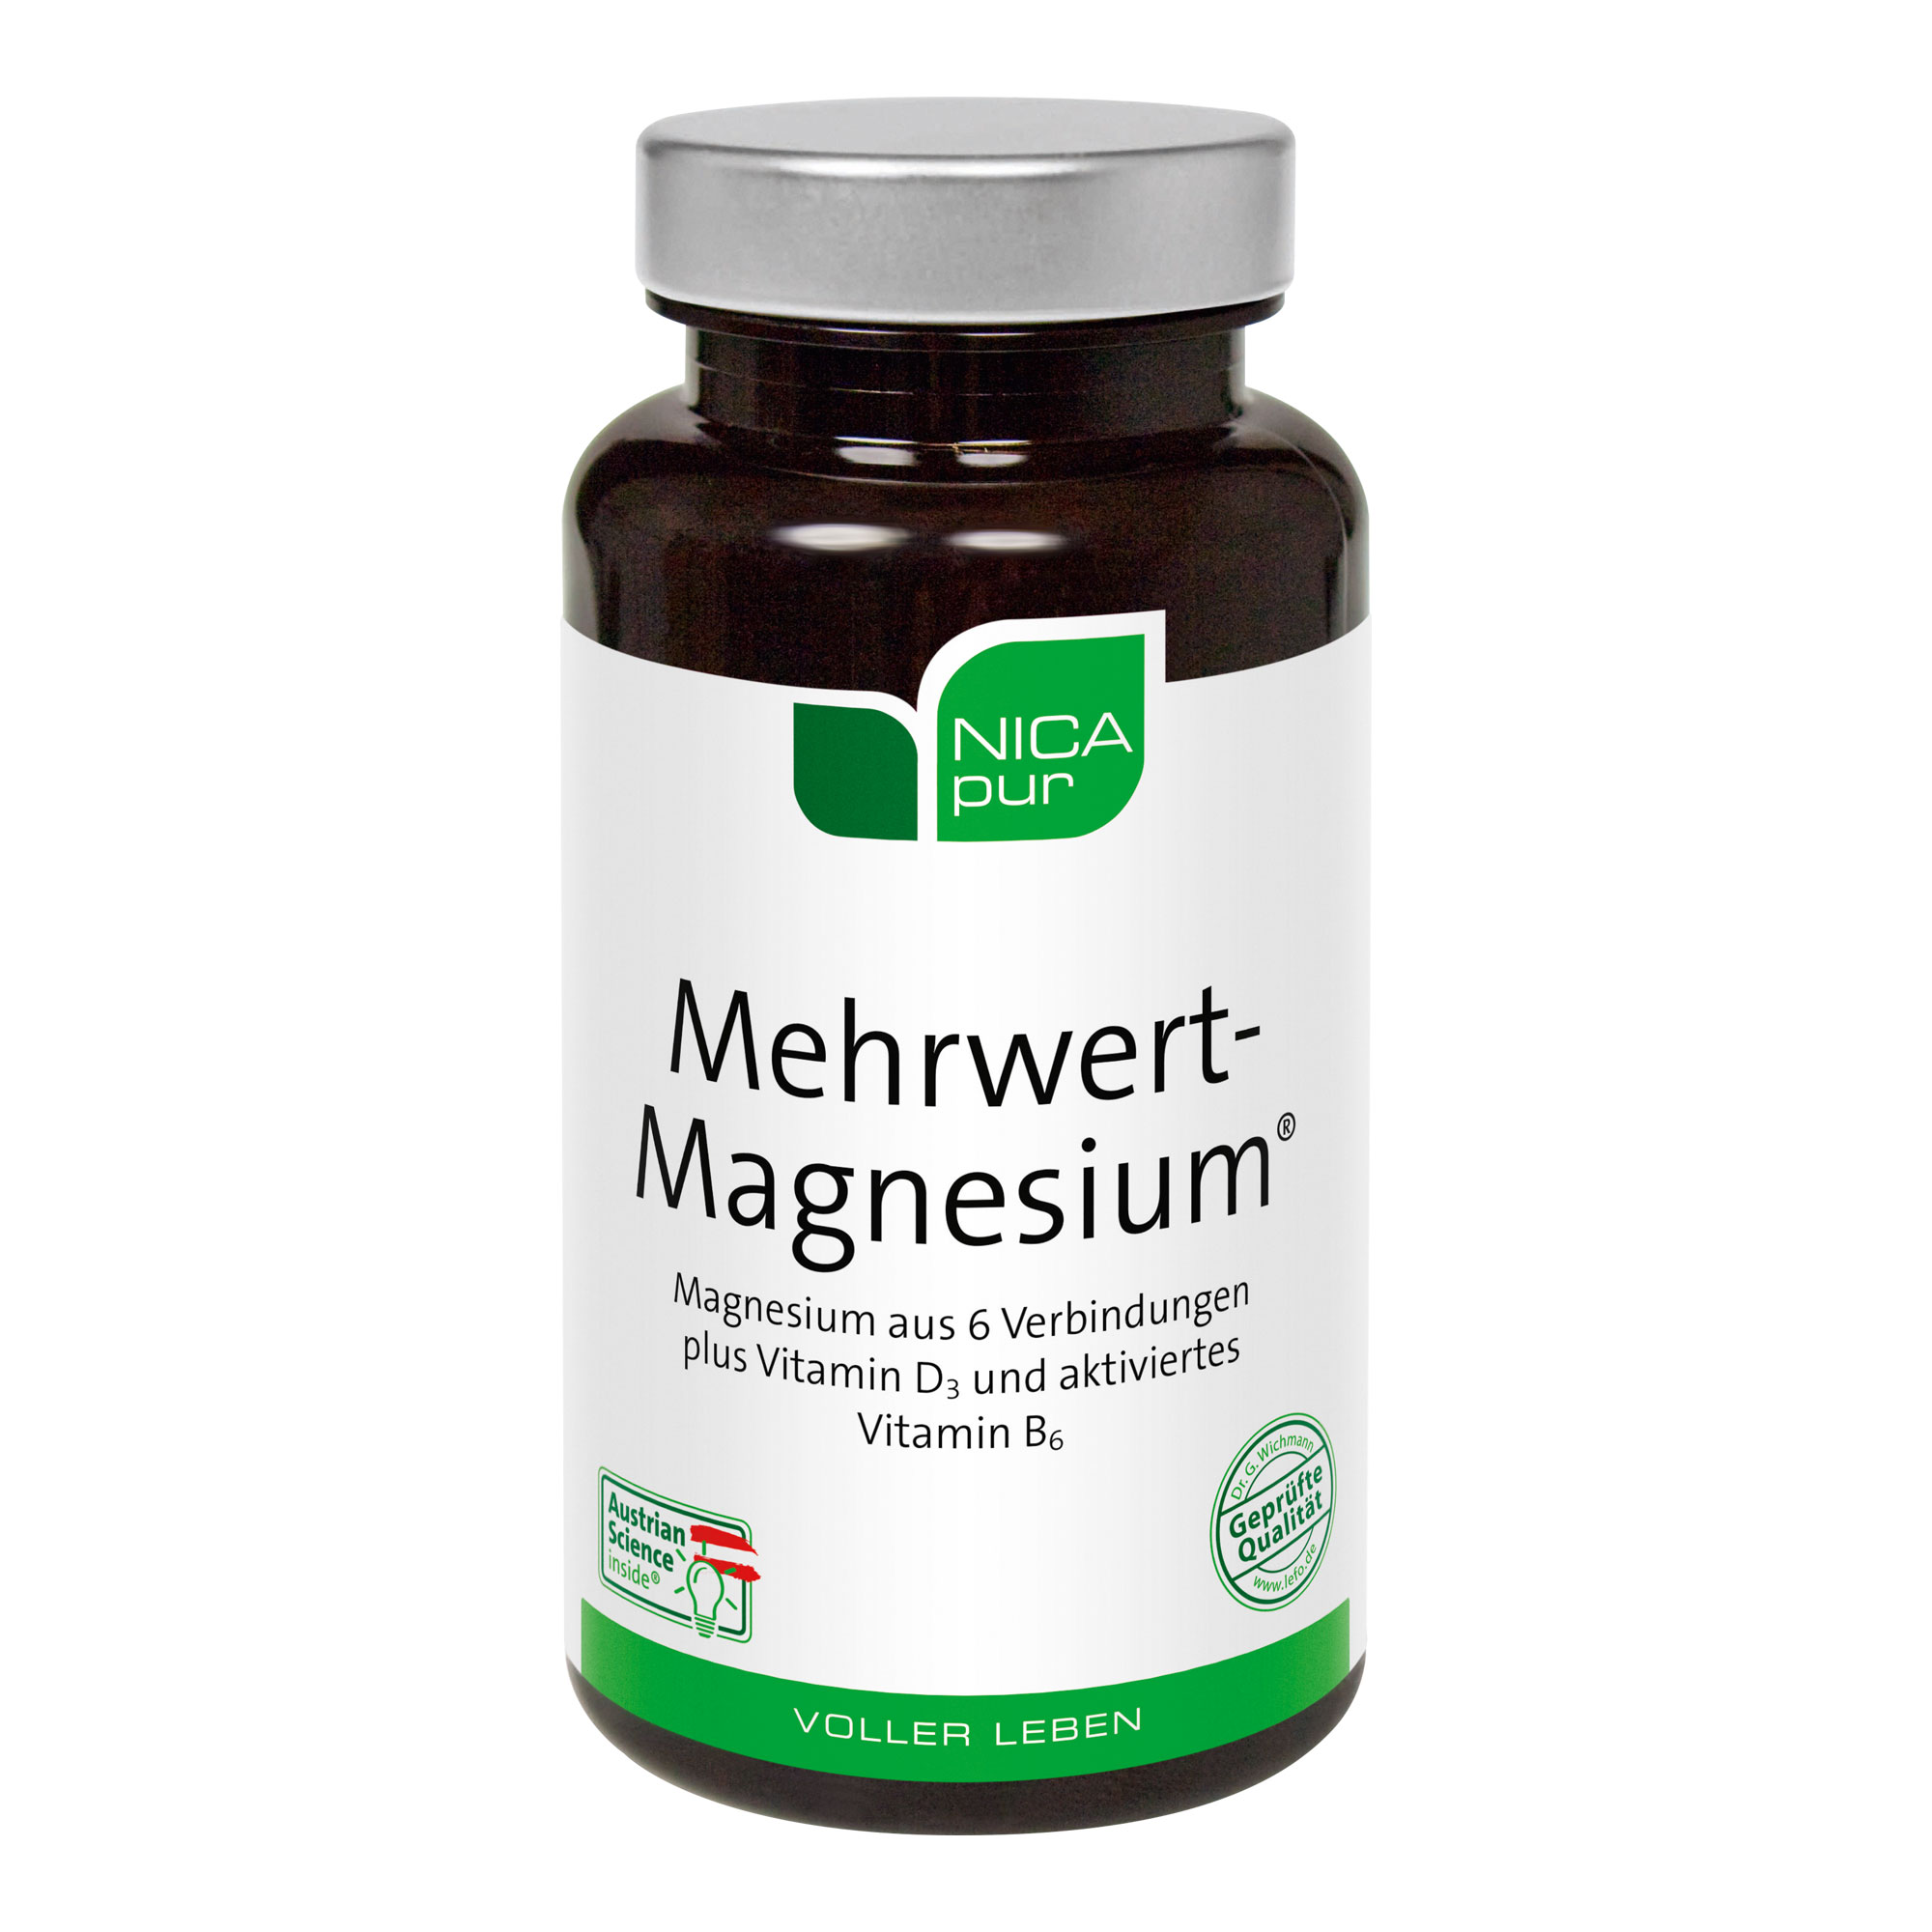 Nahrungsergänzungsmittel mit dem Mineralstoff Magnesium, Vitamin B6 in aktivierter Form und Vitamin D3.